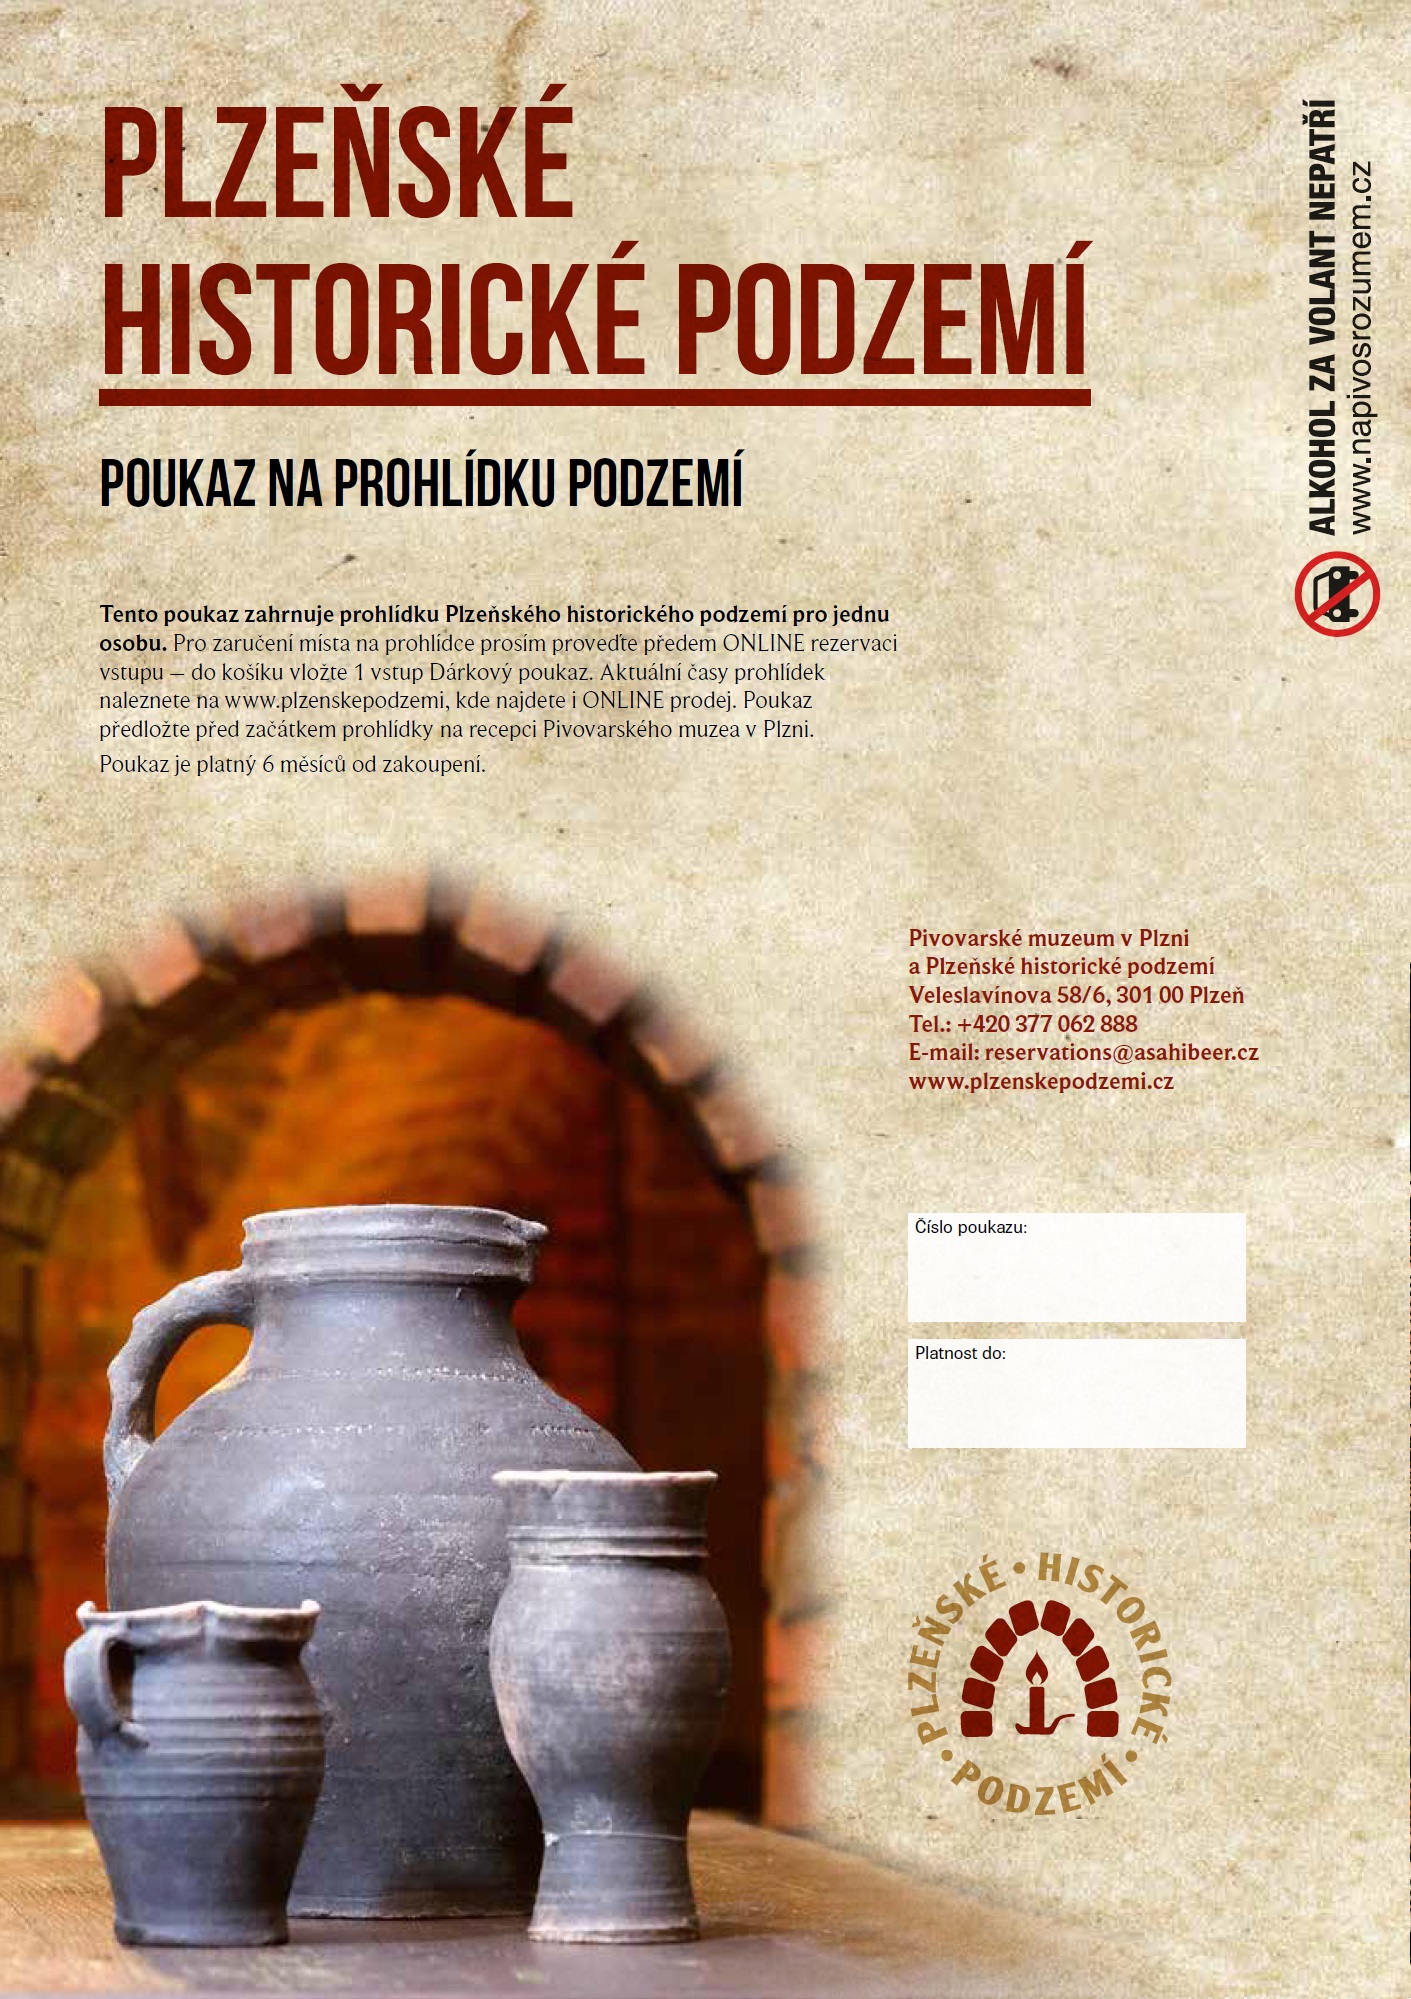 Prohlídka plzeňského historického podzemí